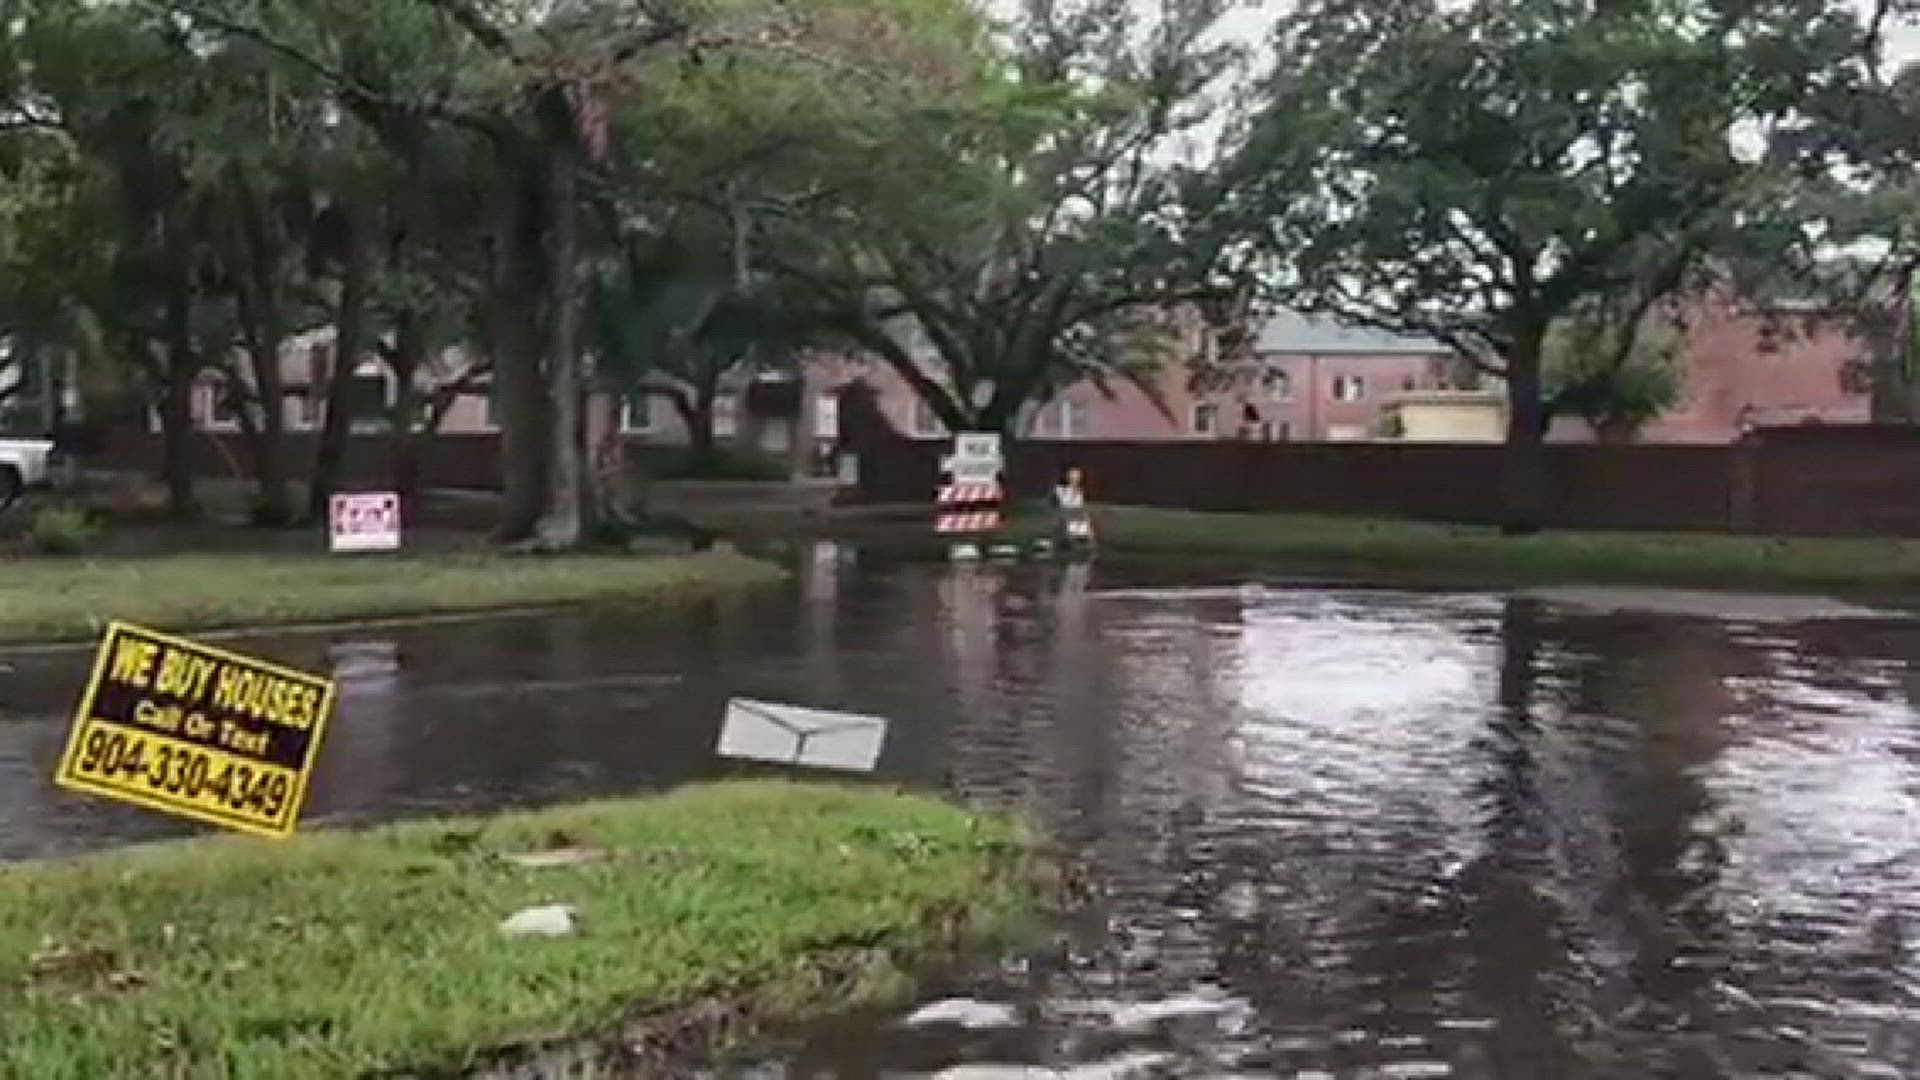 Palm Ave & Cordova Pl still closed during Nicole flooding
Credit: Renata Di Gregorio